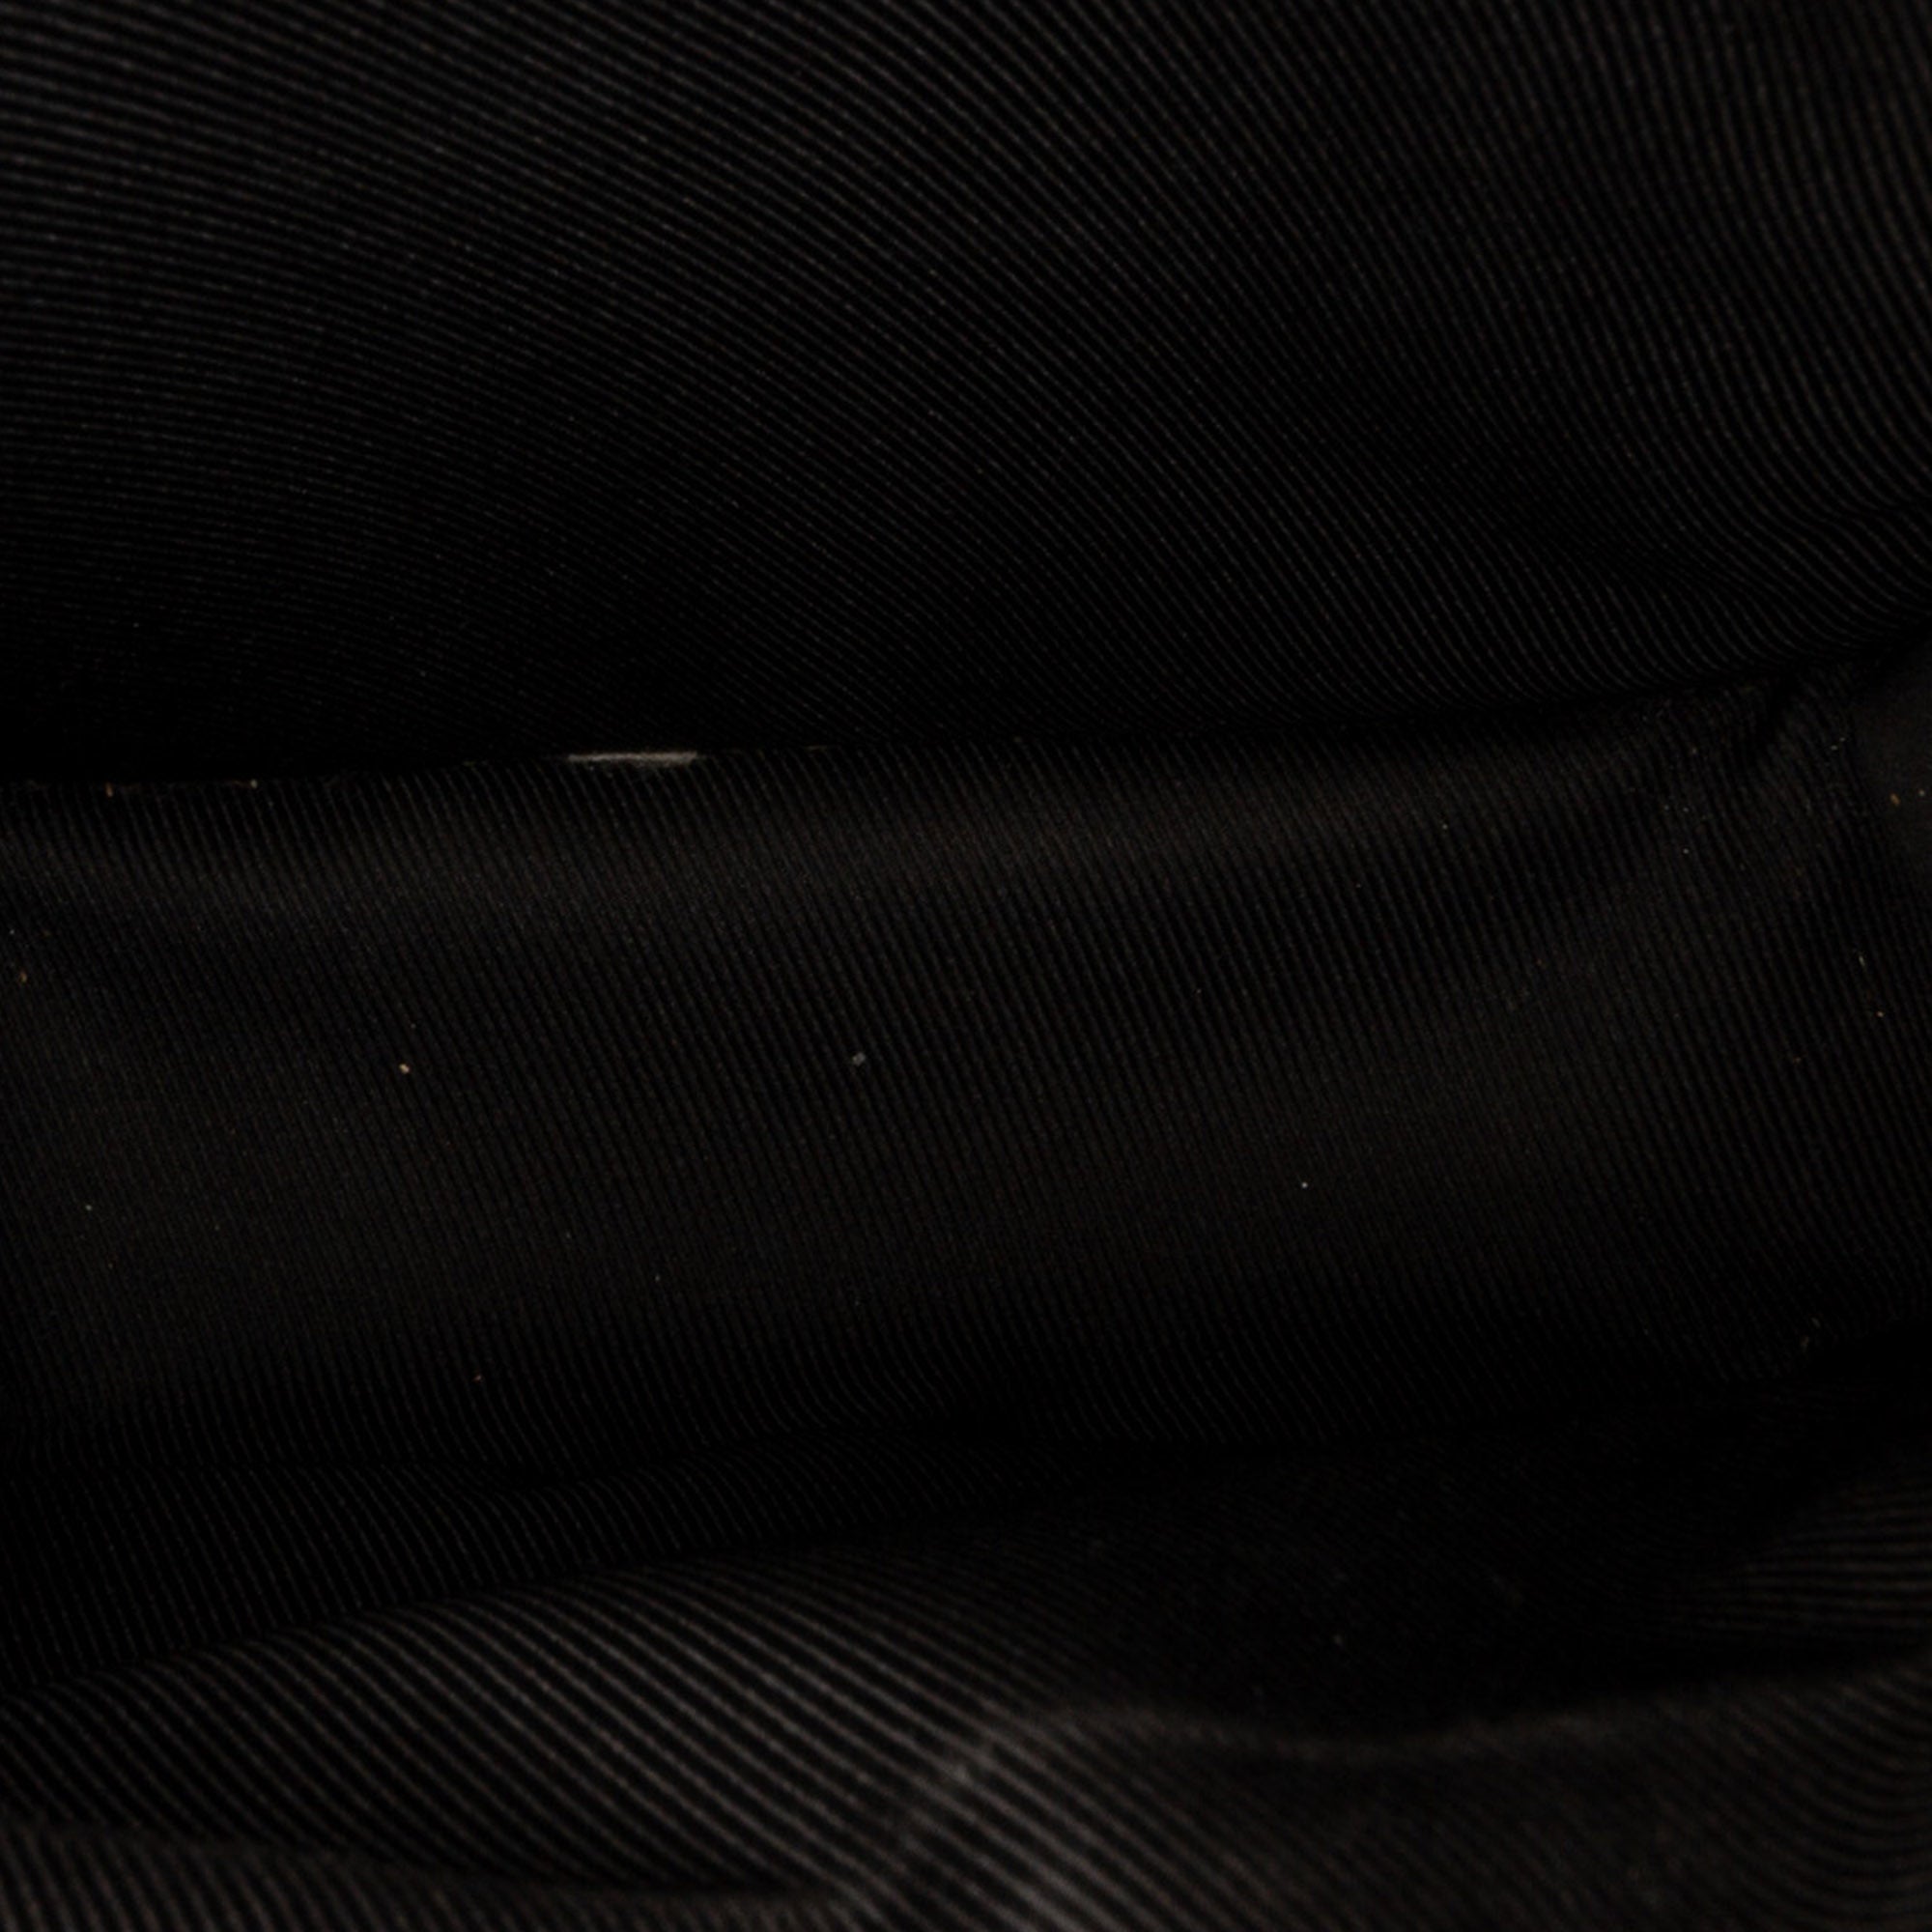 Louis Vuitton x Nigo Giant Damier Ebene Nano e Messenger - Brown Messenger  Bags, Bags - LVNOU20155